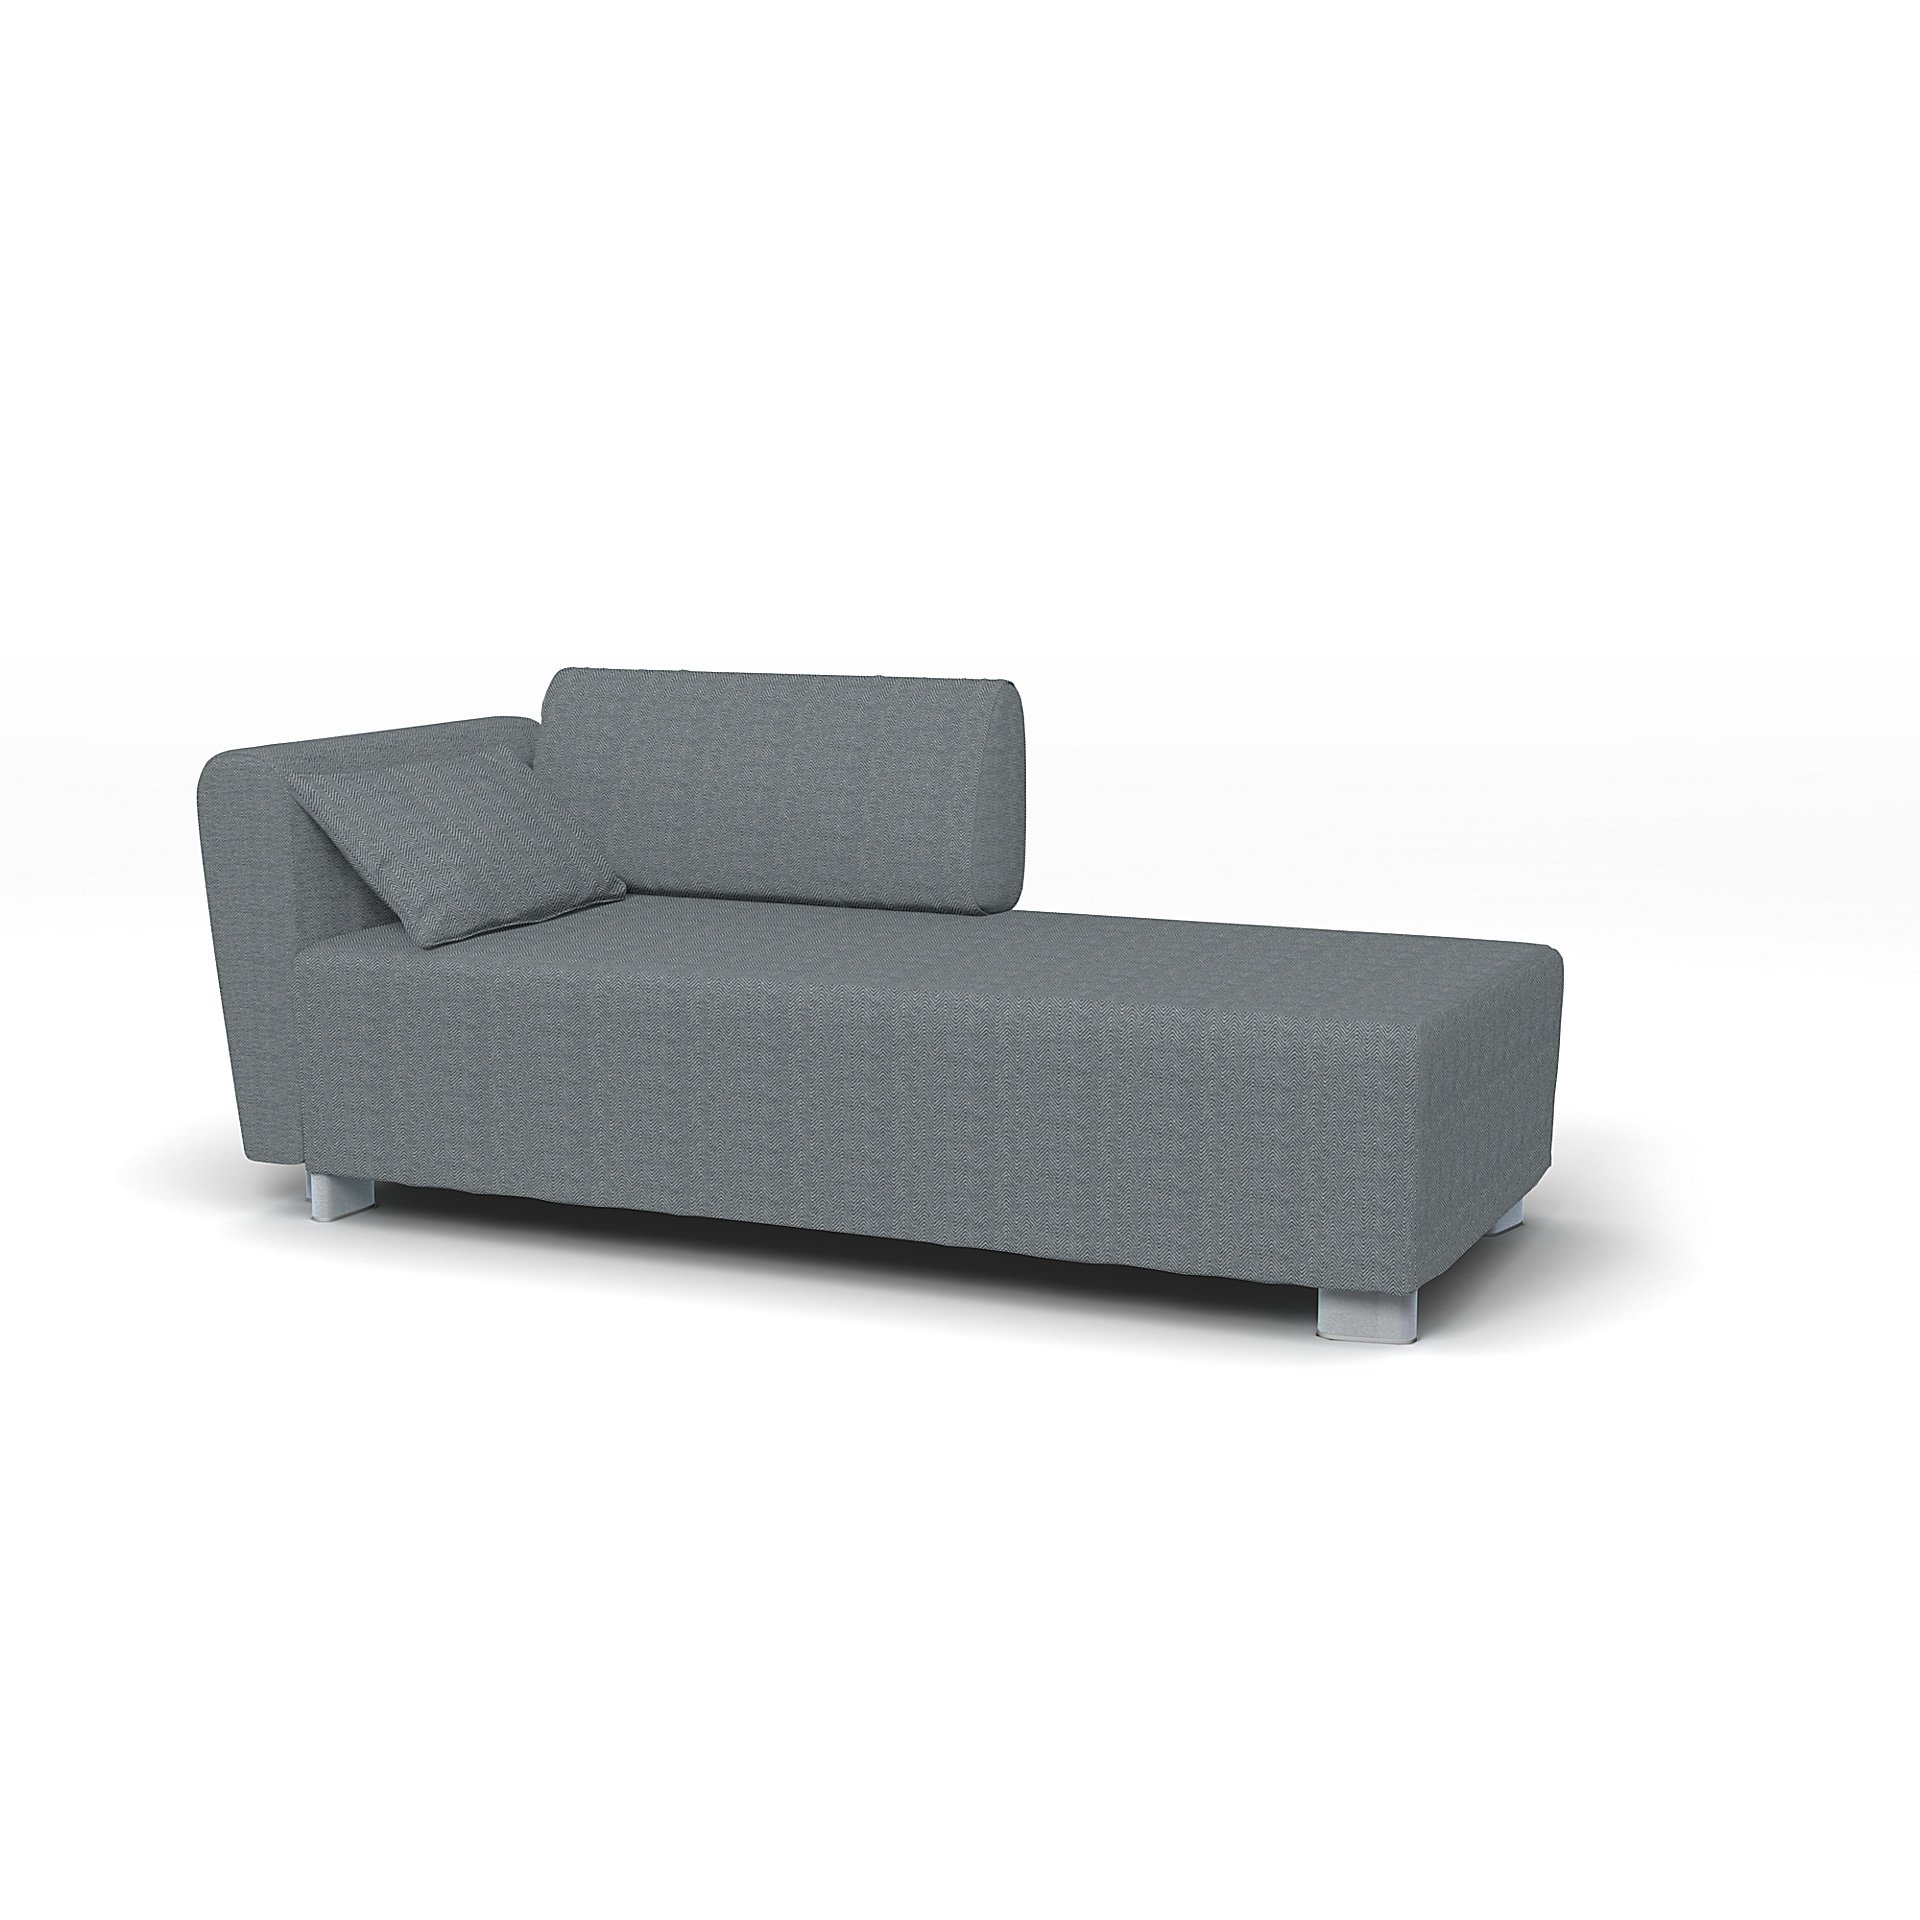 IKEA - Mysinge Chaise Longue with Armrest Cover, Denim, Cotton - Bemz